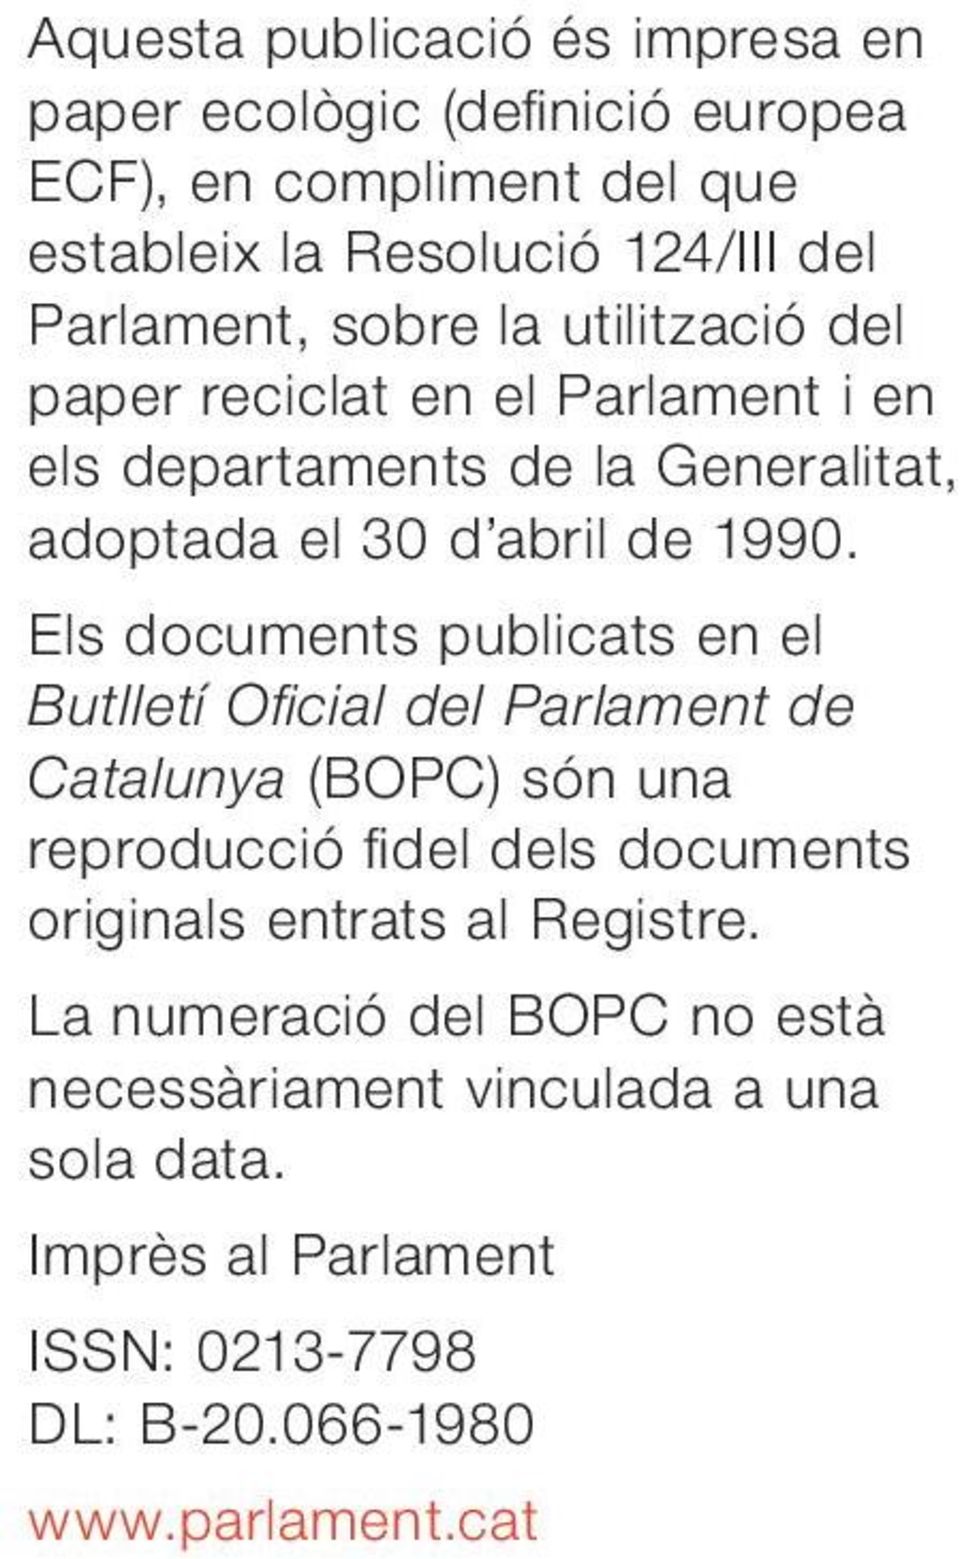 Els documents publicats en el Butlletí Oficial del Parlament de Catalunya (BOPC) són una reproducció fidel dels documents originals entrats